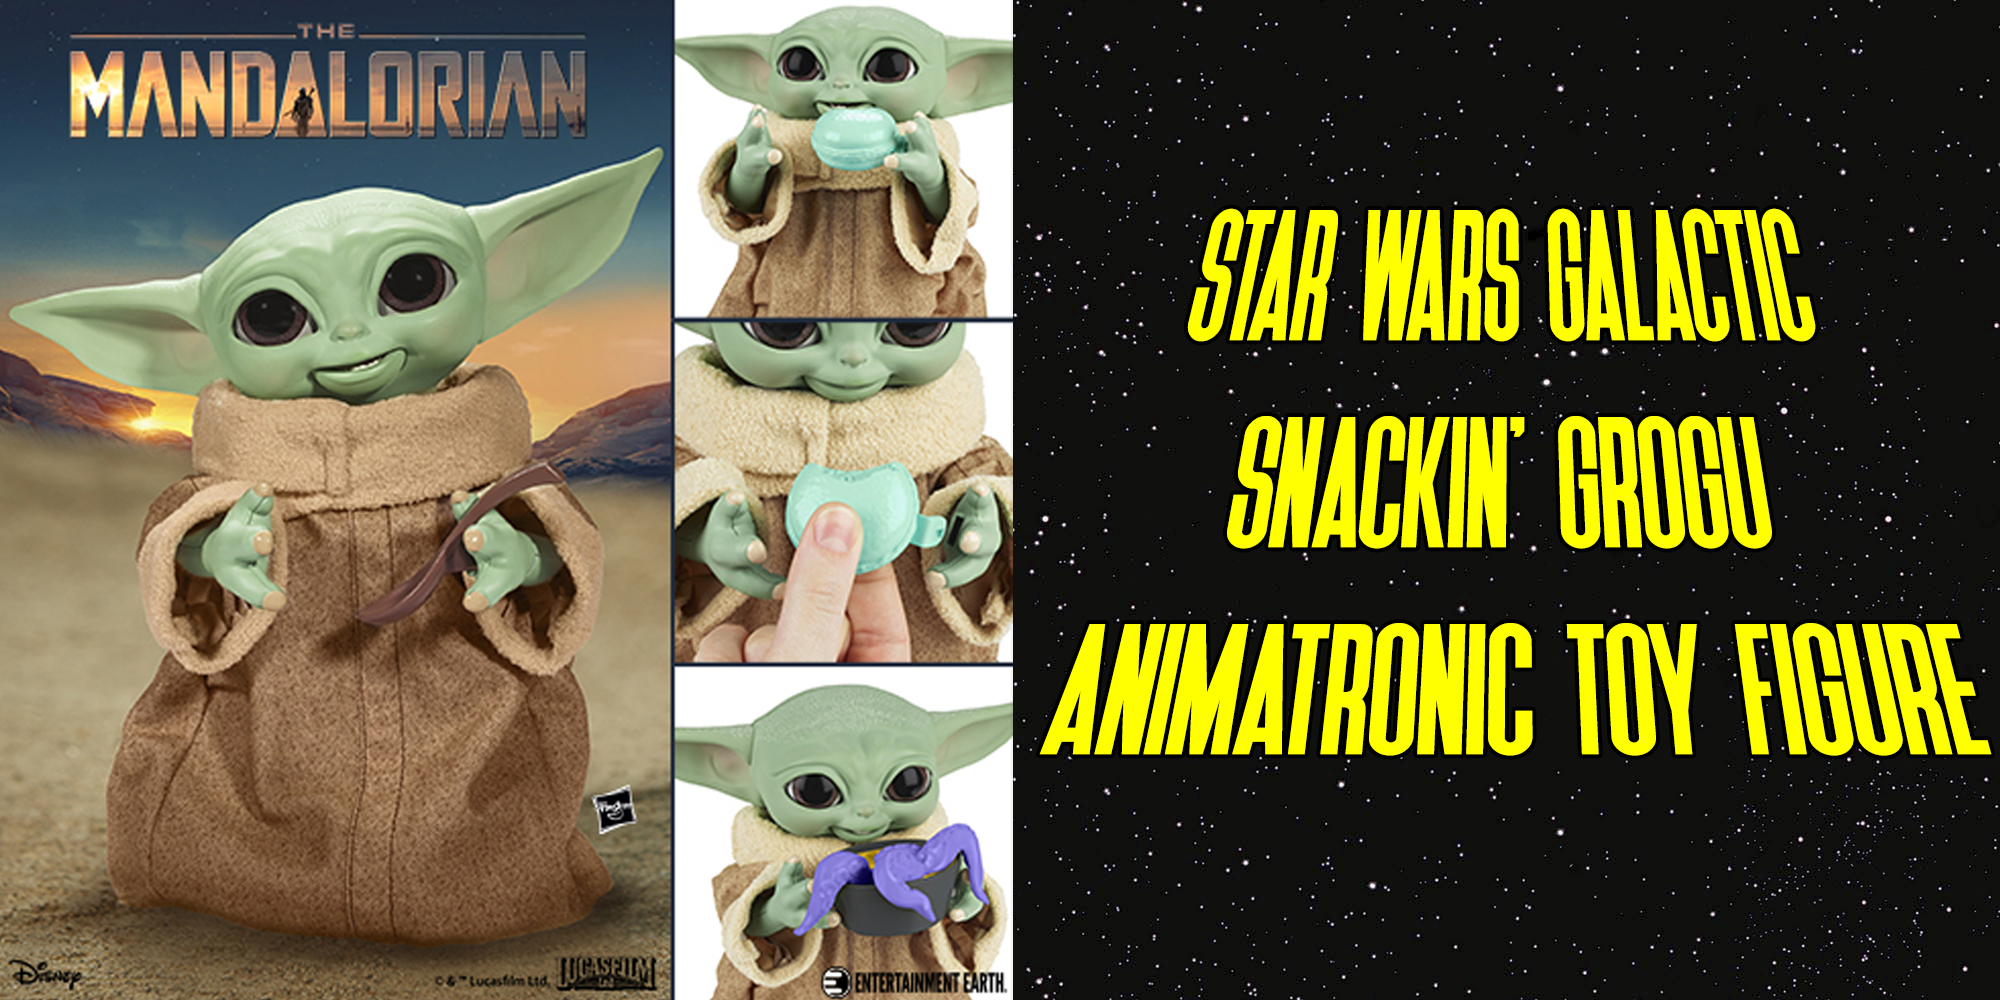 Star Wars Galactic Snackin’ Grogu Animatronic Toy Figure